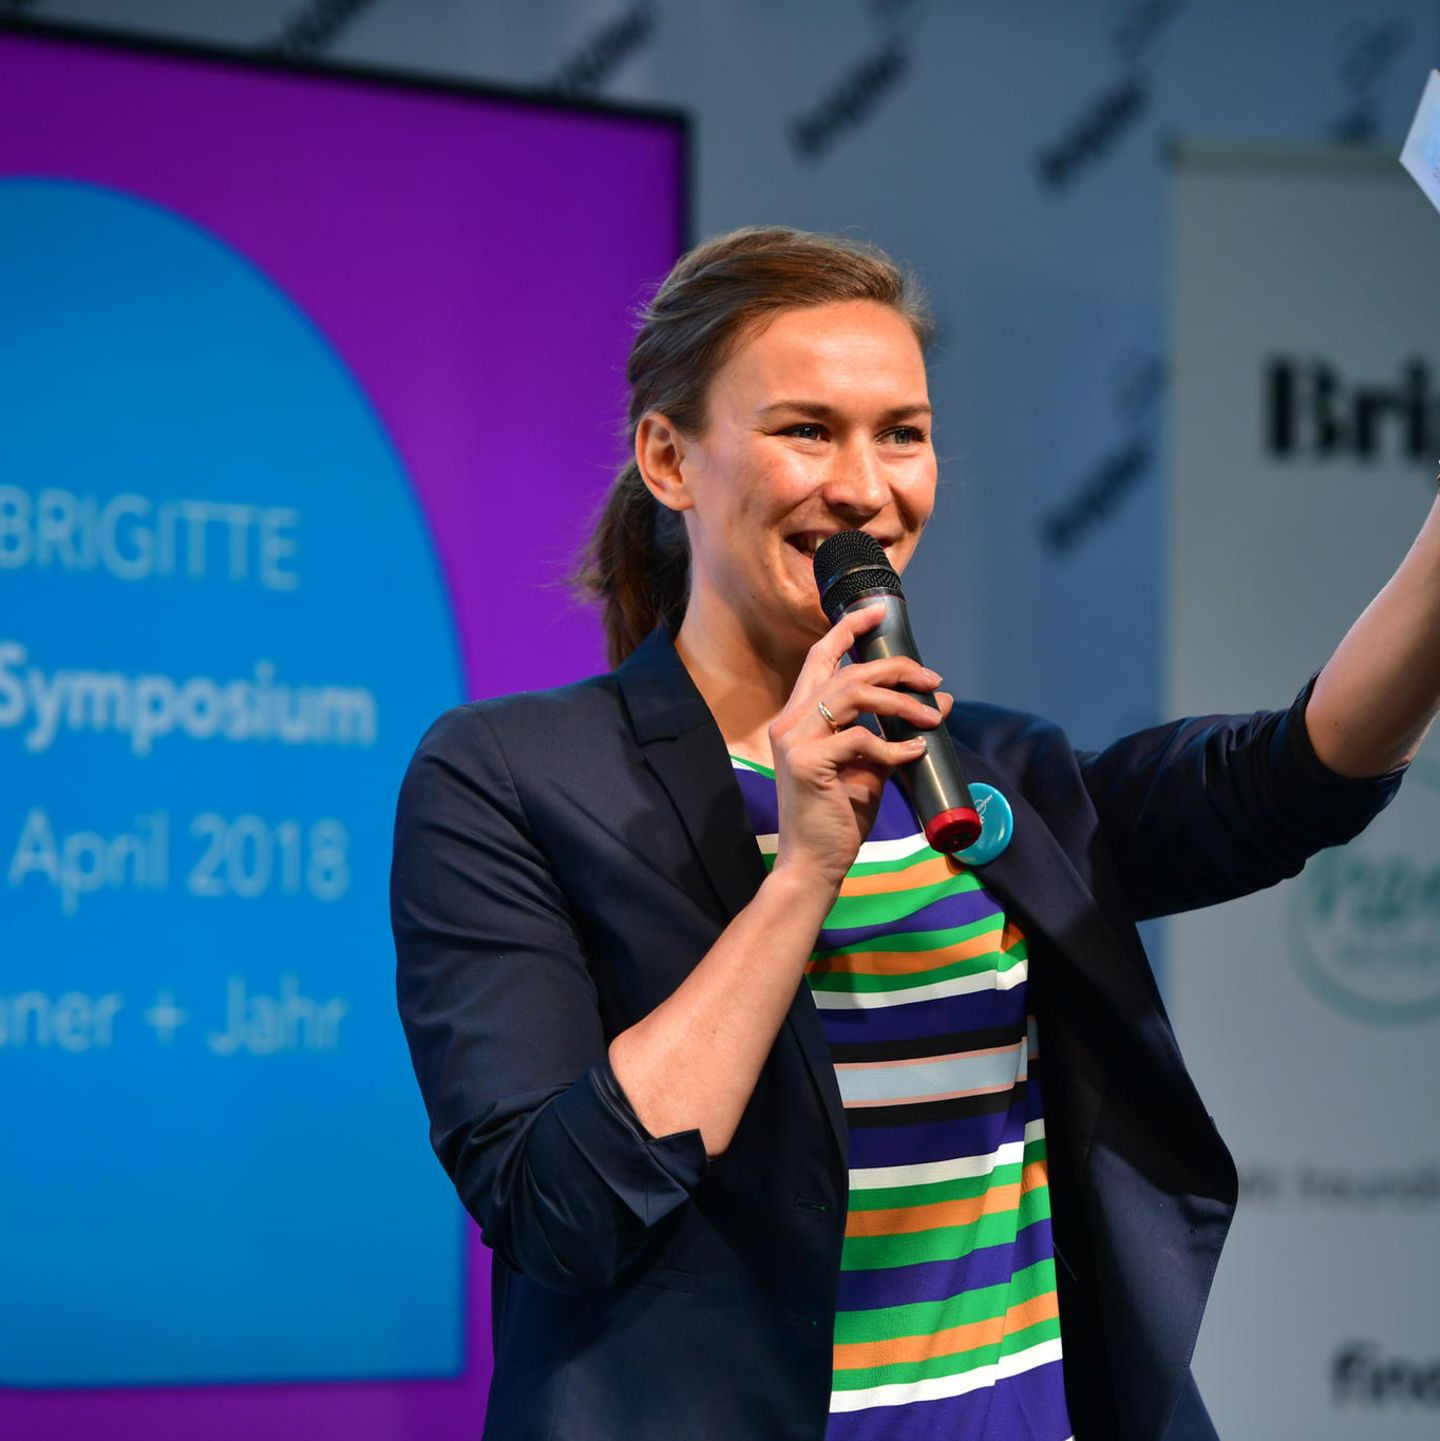 Anna van Koetsveld, Leiterin der BRIGITTE Academy, eröffnete die Veranstaltung